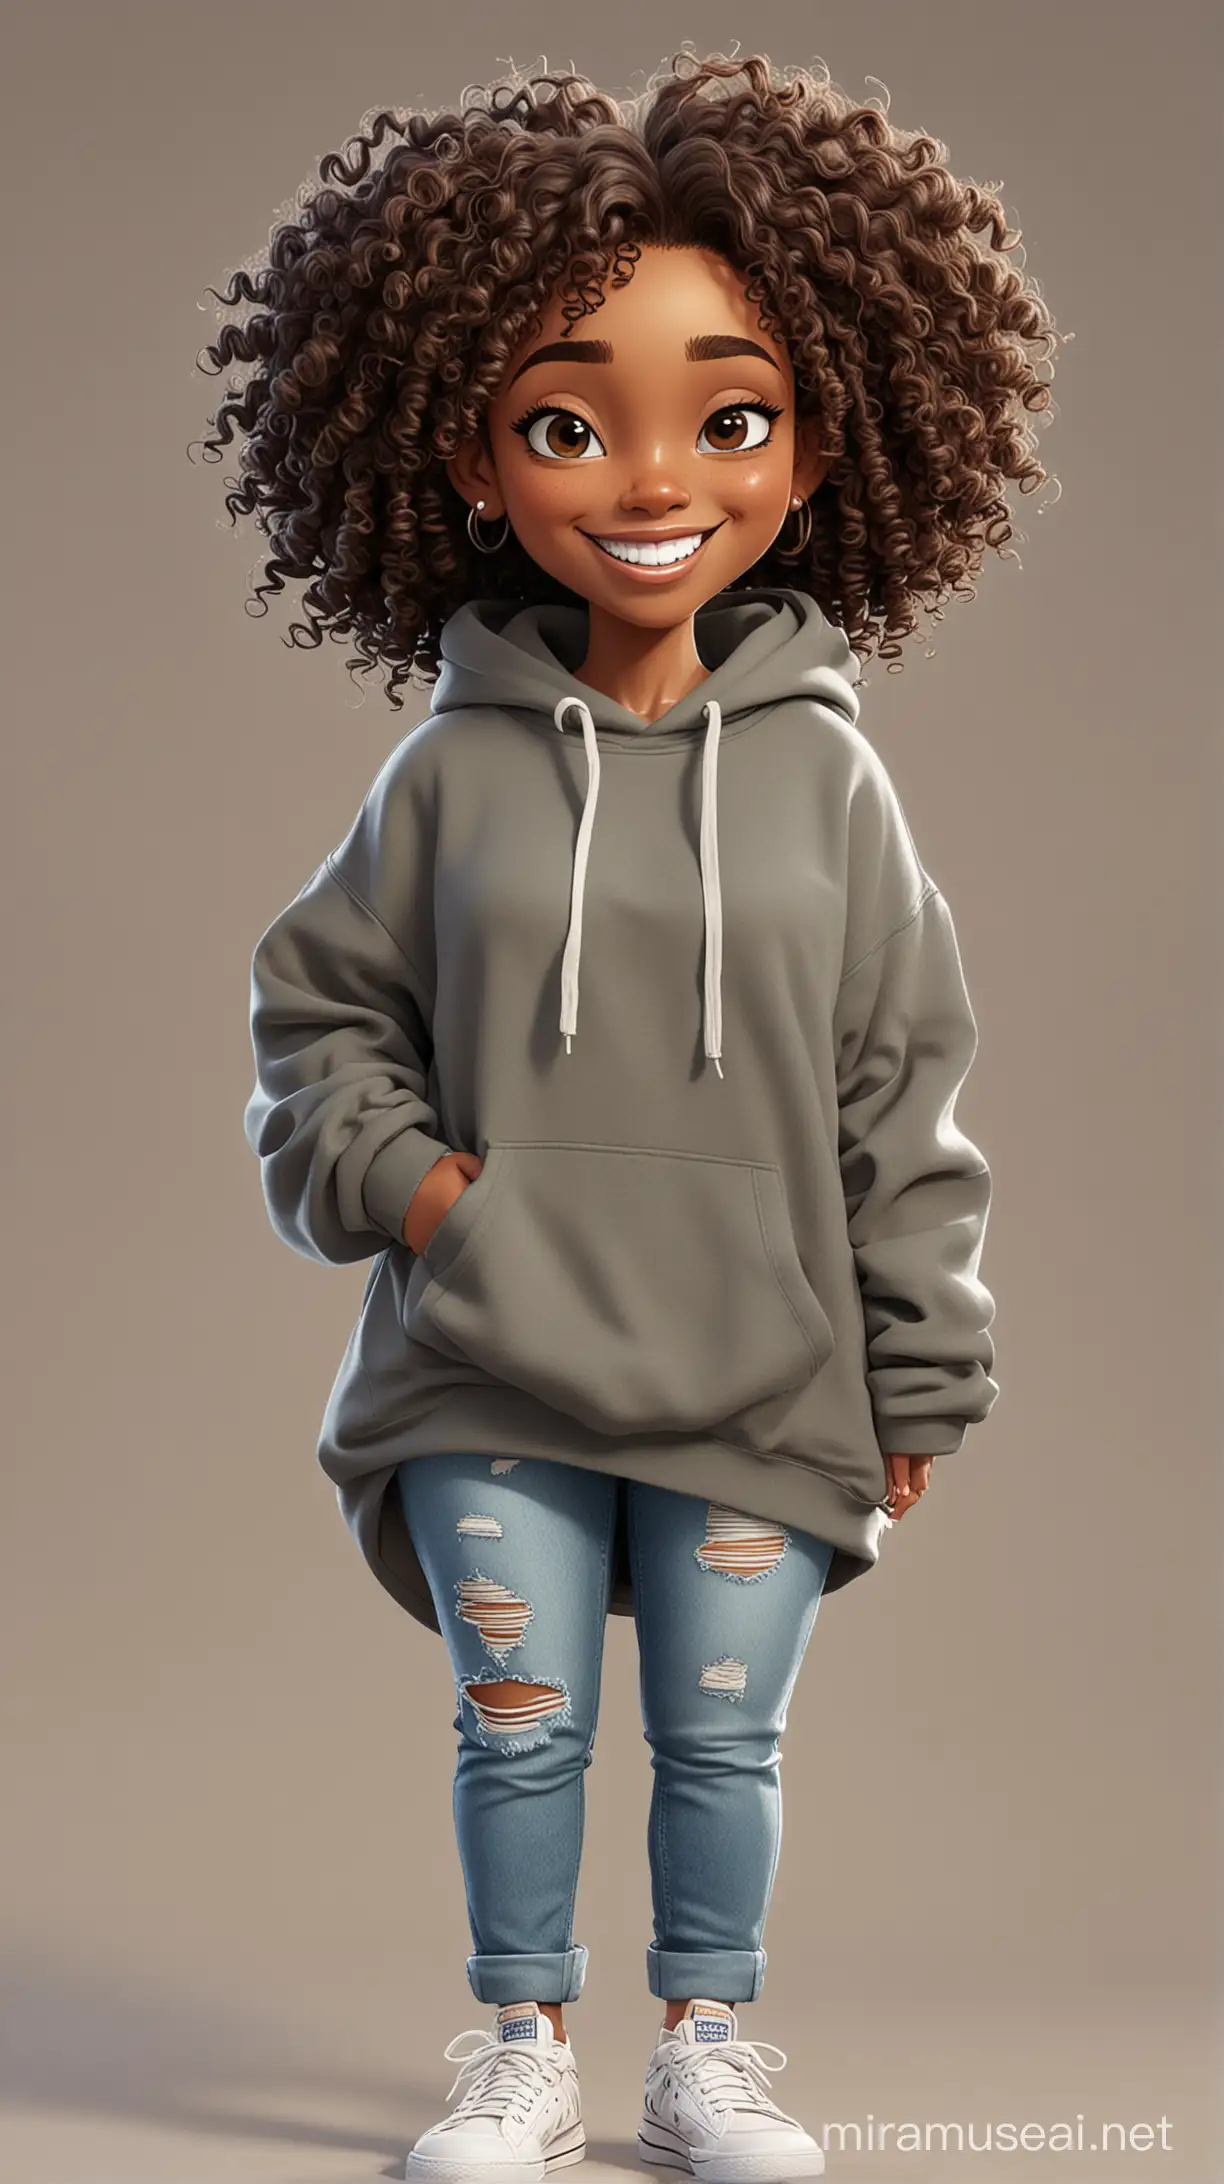 Cheerful Cartoon Black Woman in Casual Baggy Sweatshirt